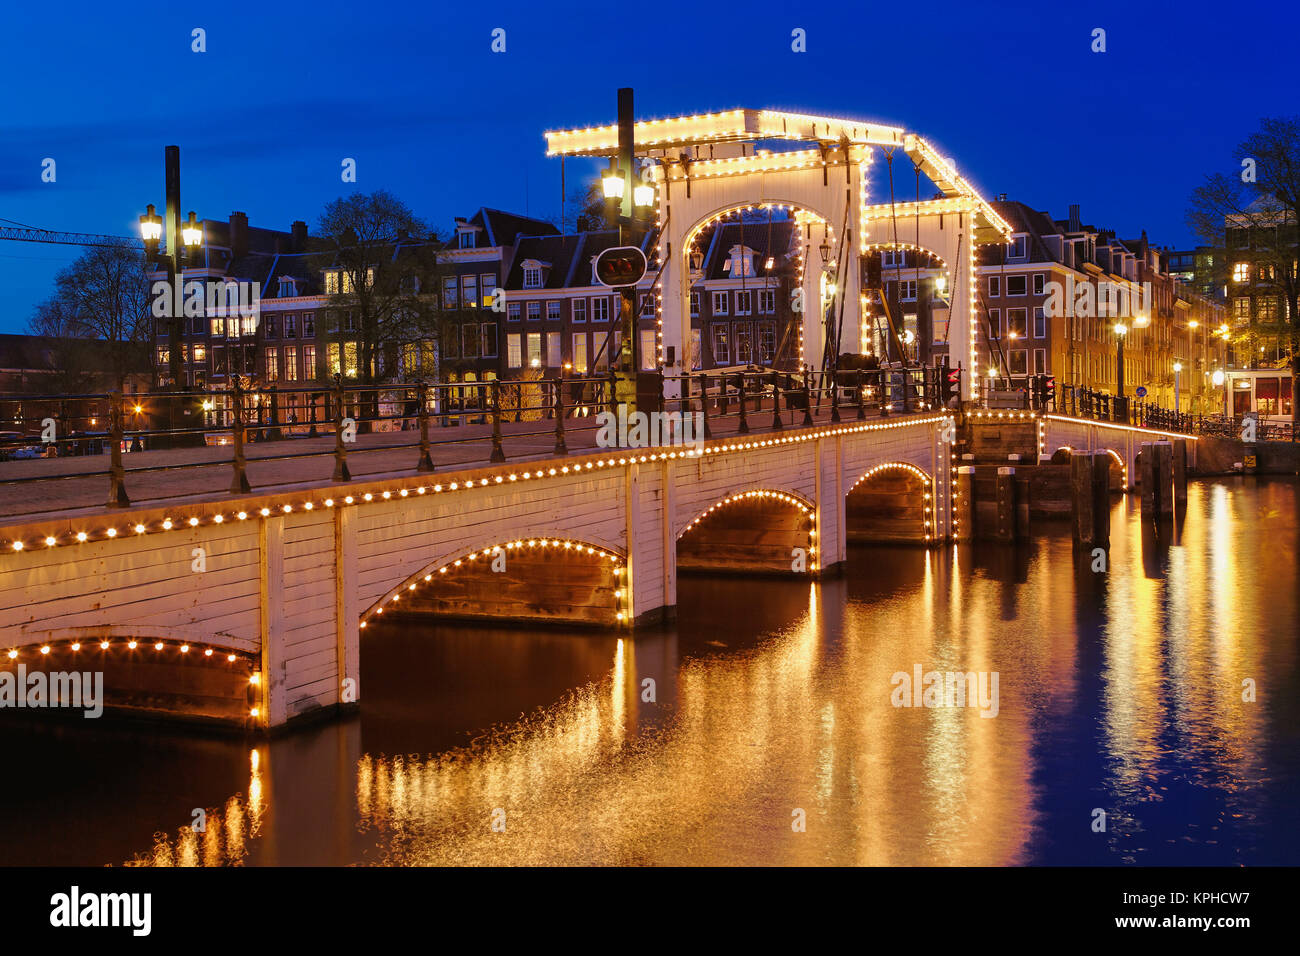 Crépuscule vue de Magere Brug ou Skinny Bridge et de la rivière Amstel, Pays-Bas, Holland Banque D'Images